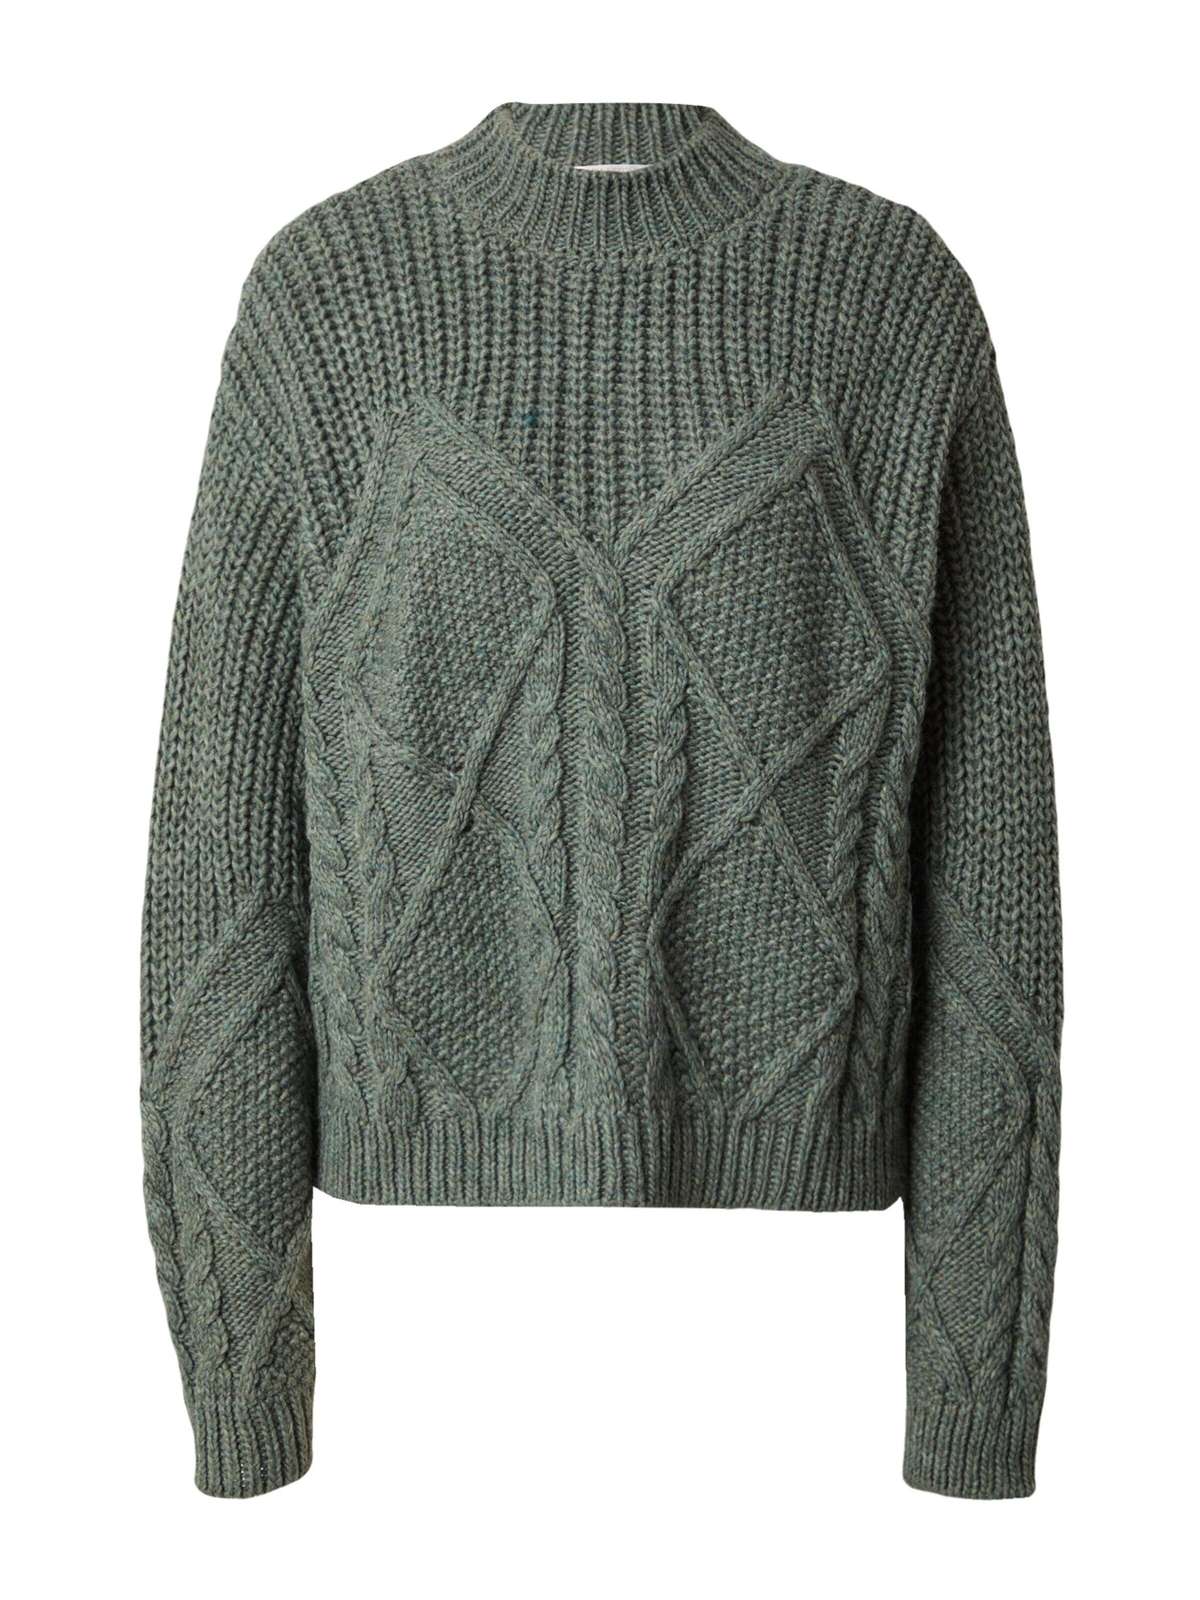 Вязаный свитер Пернилла (1 шт.) Подробнее